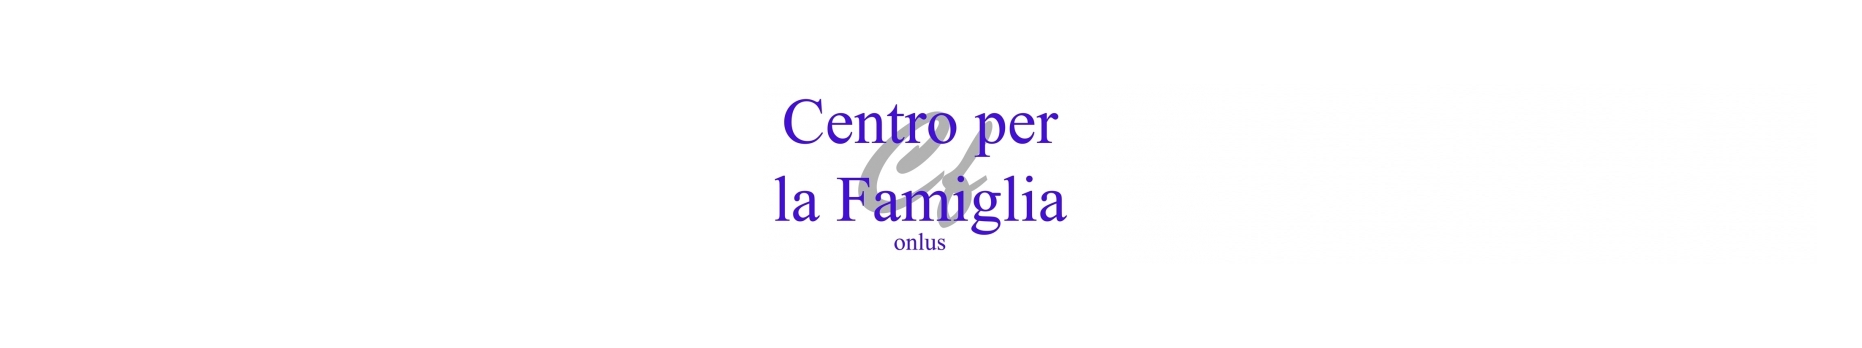 Associazione Centro per la Famiglia ONLUS - logo